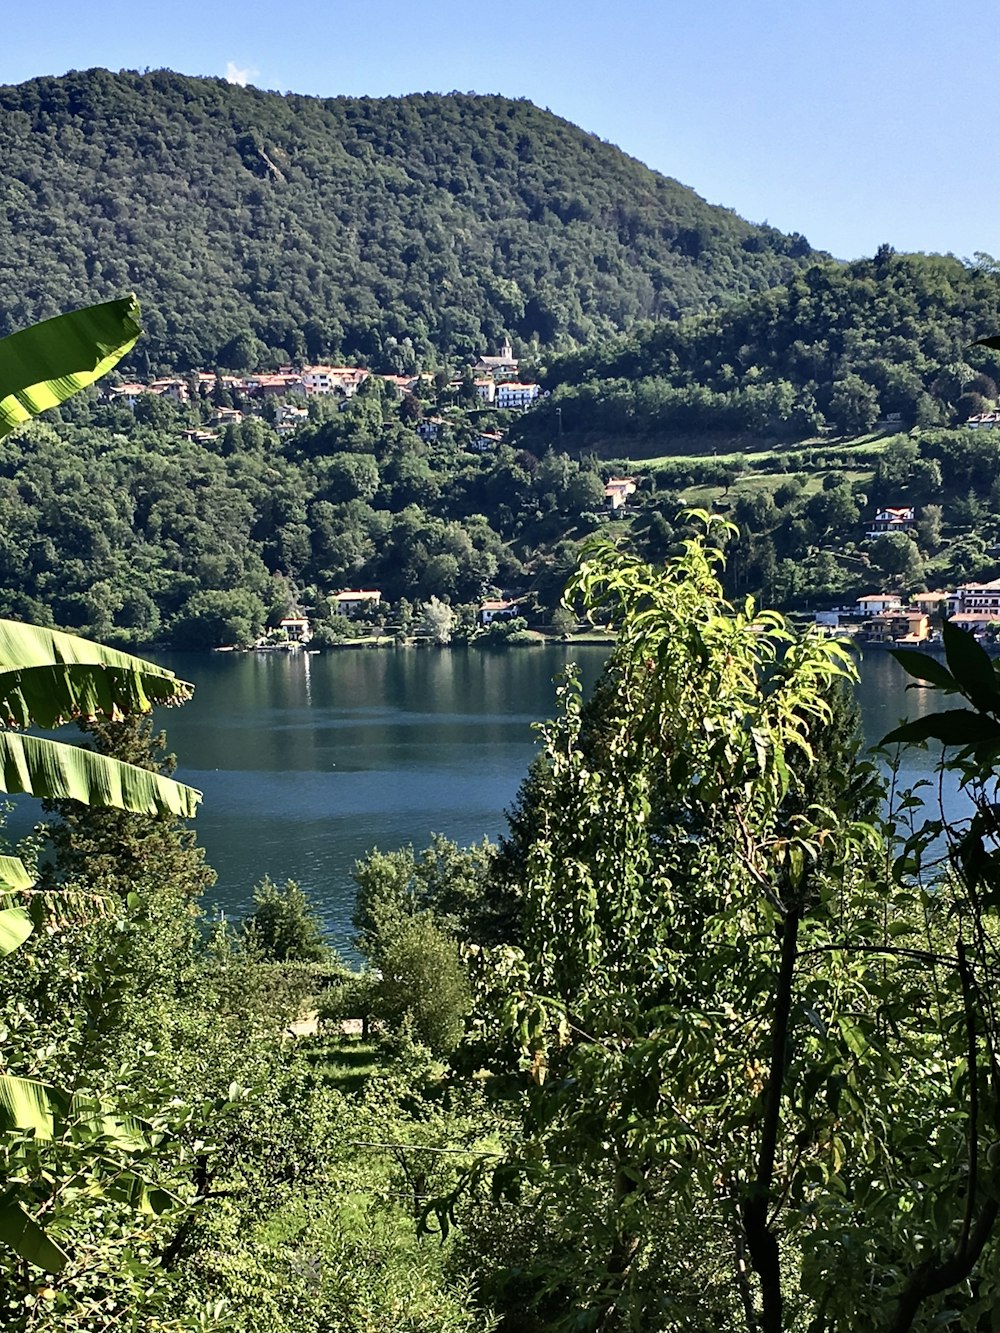 una vista di un lago circondato da alberi verdi lussureggianti